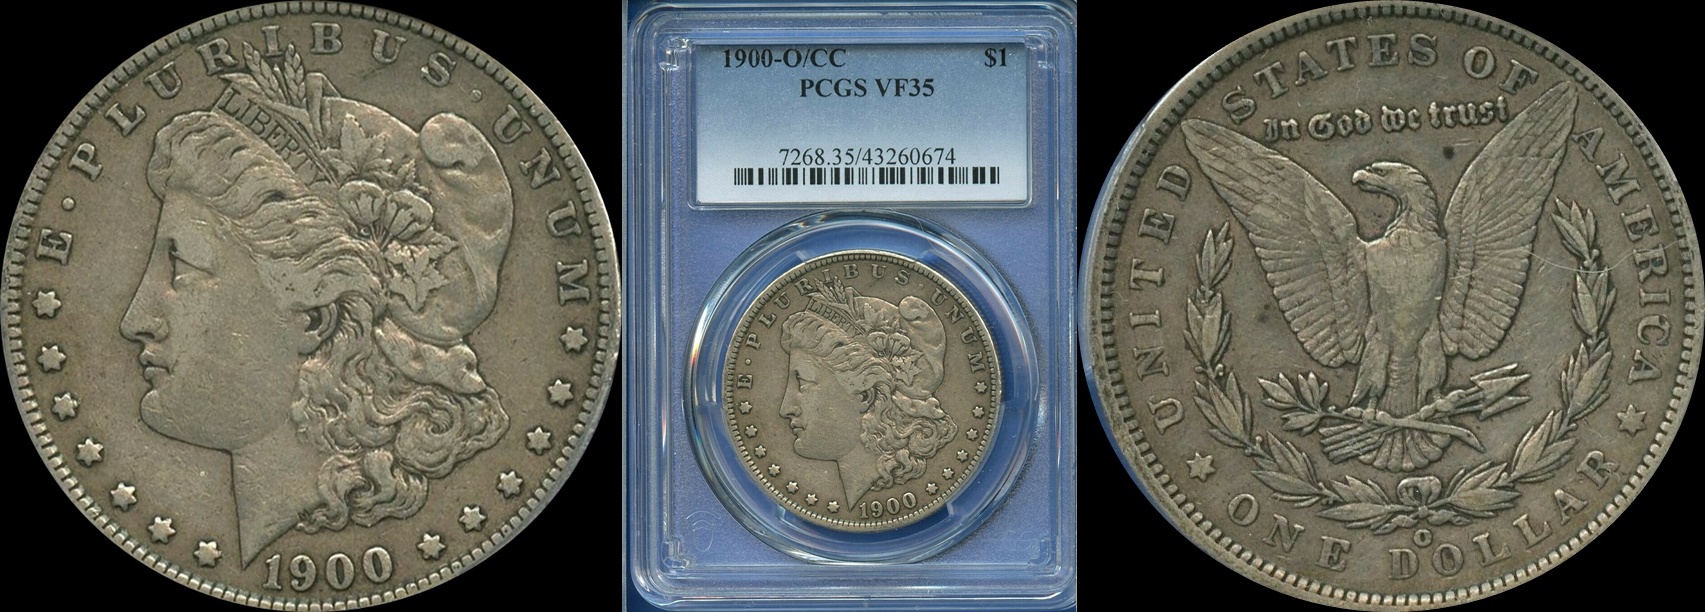 1900 O CC PCGS VF35 Morgan Silver Dollar 1a-horz.jpg